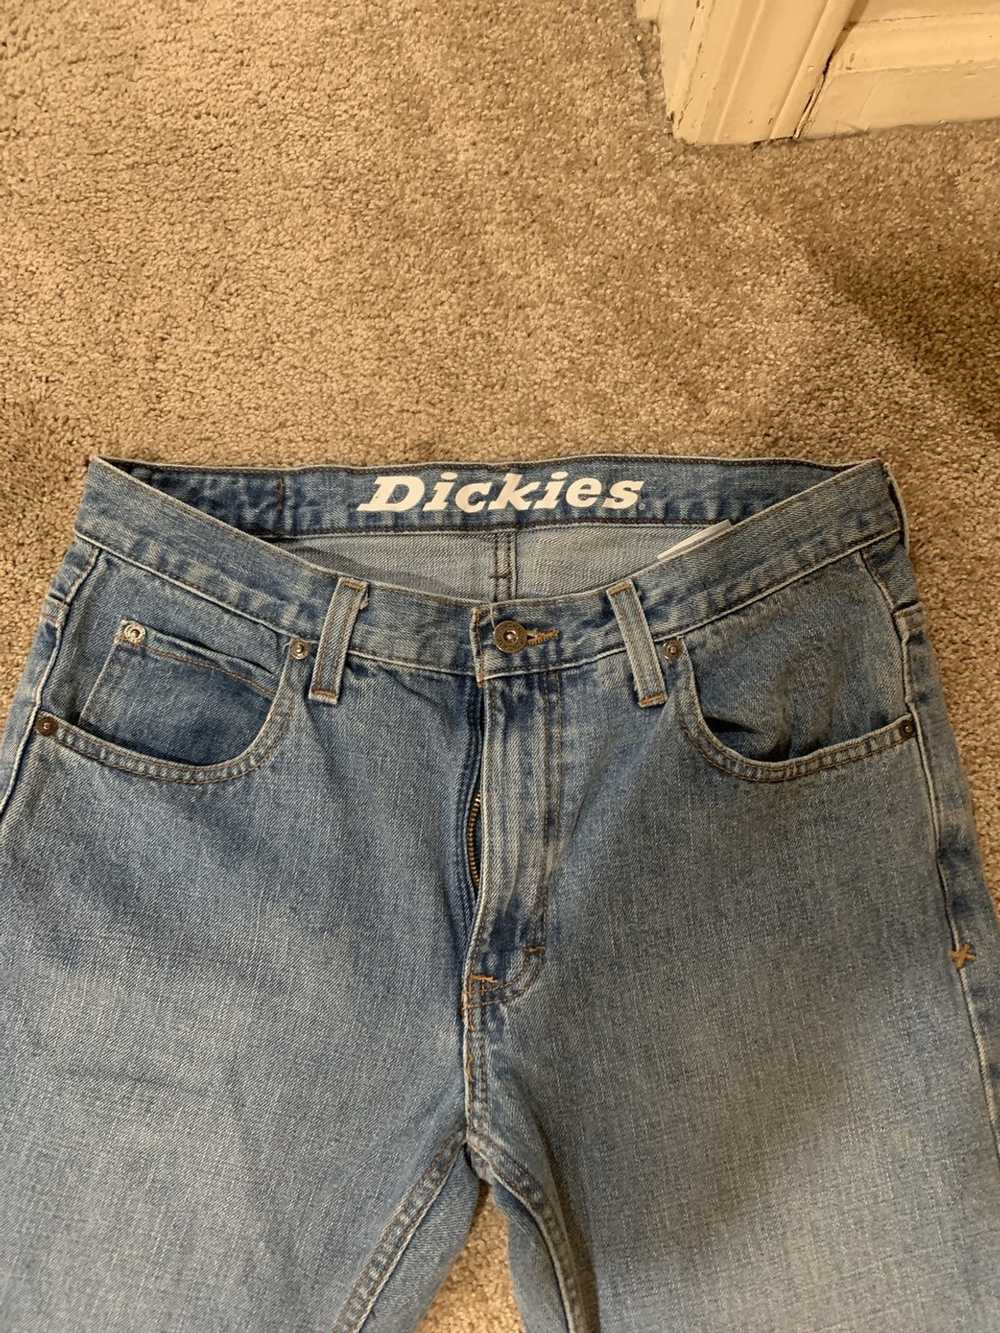 Dickies Dickies jeans 32 - image 2